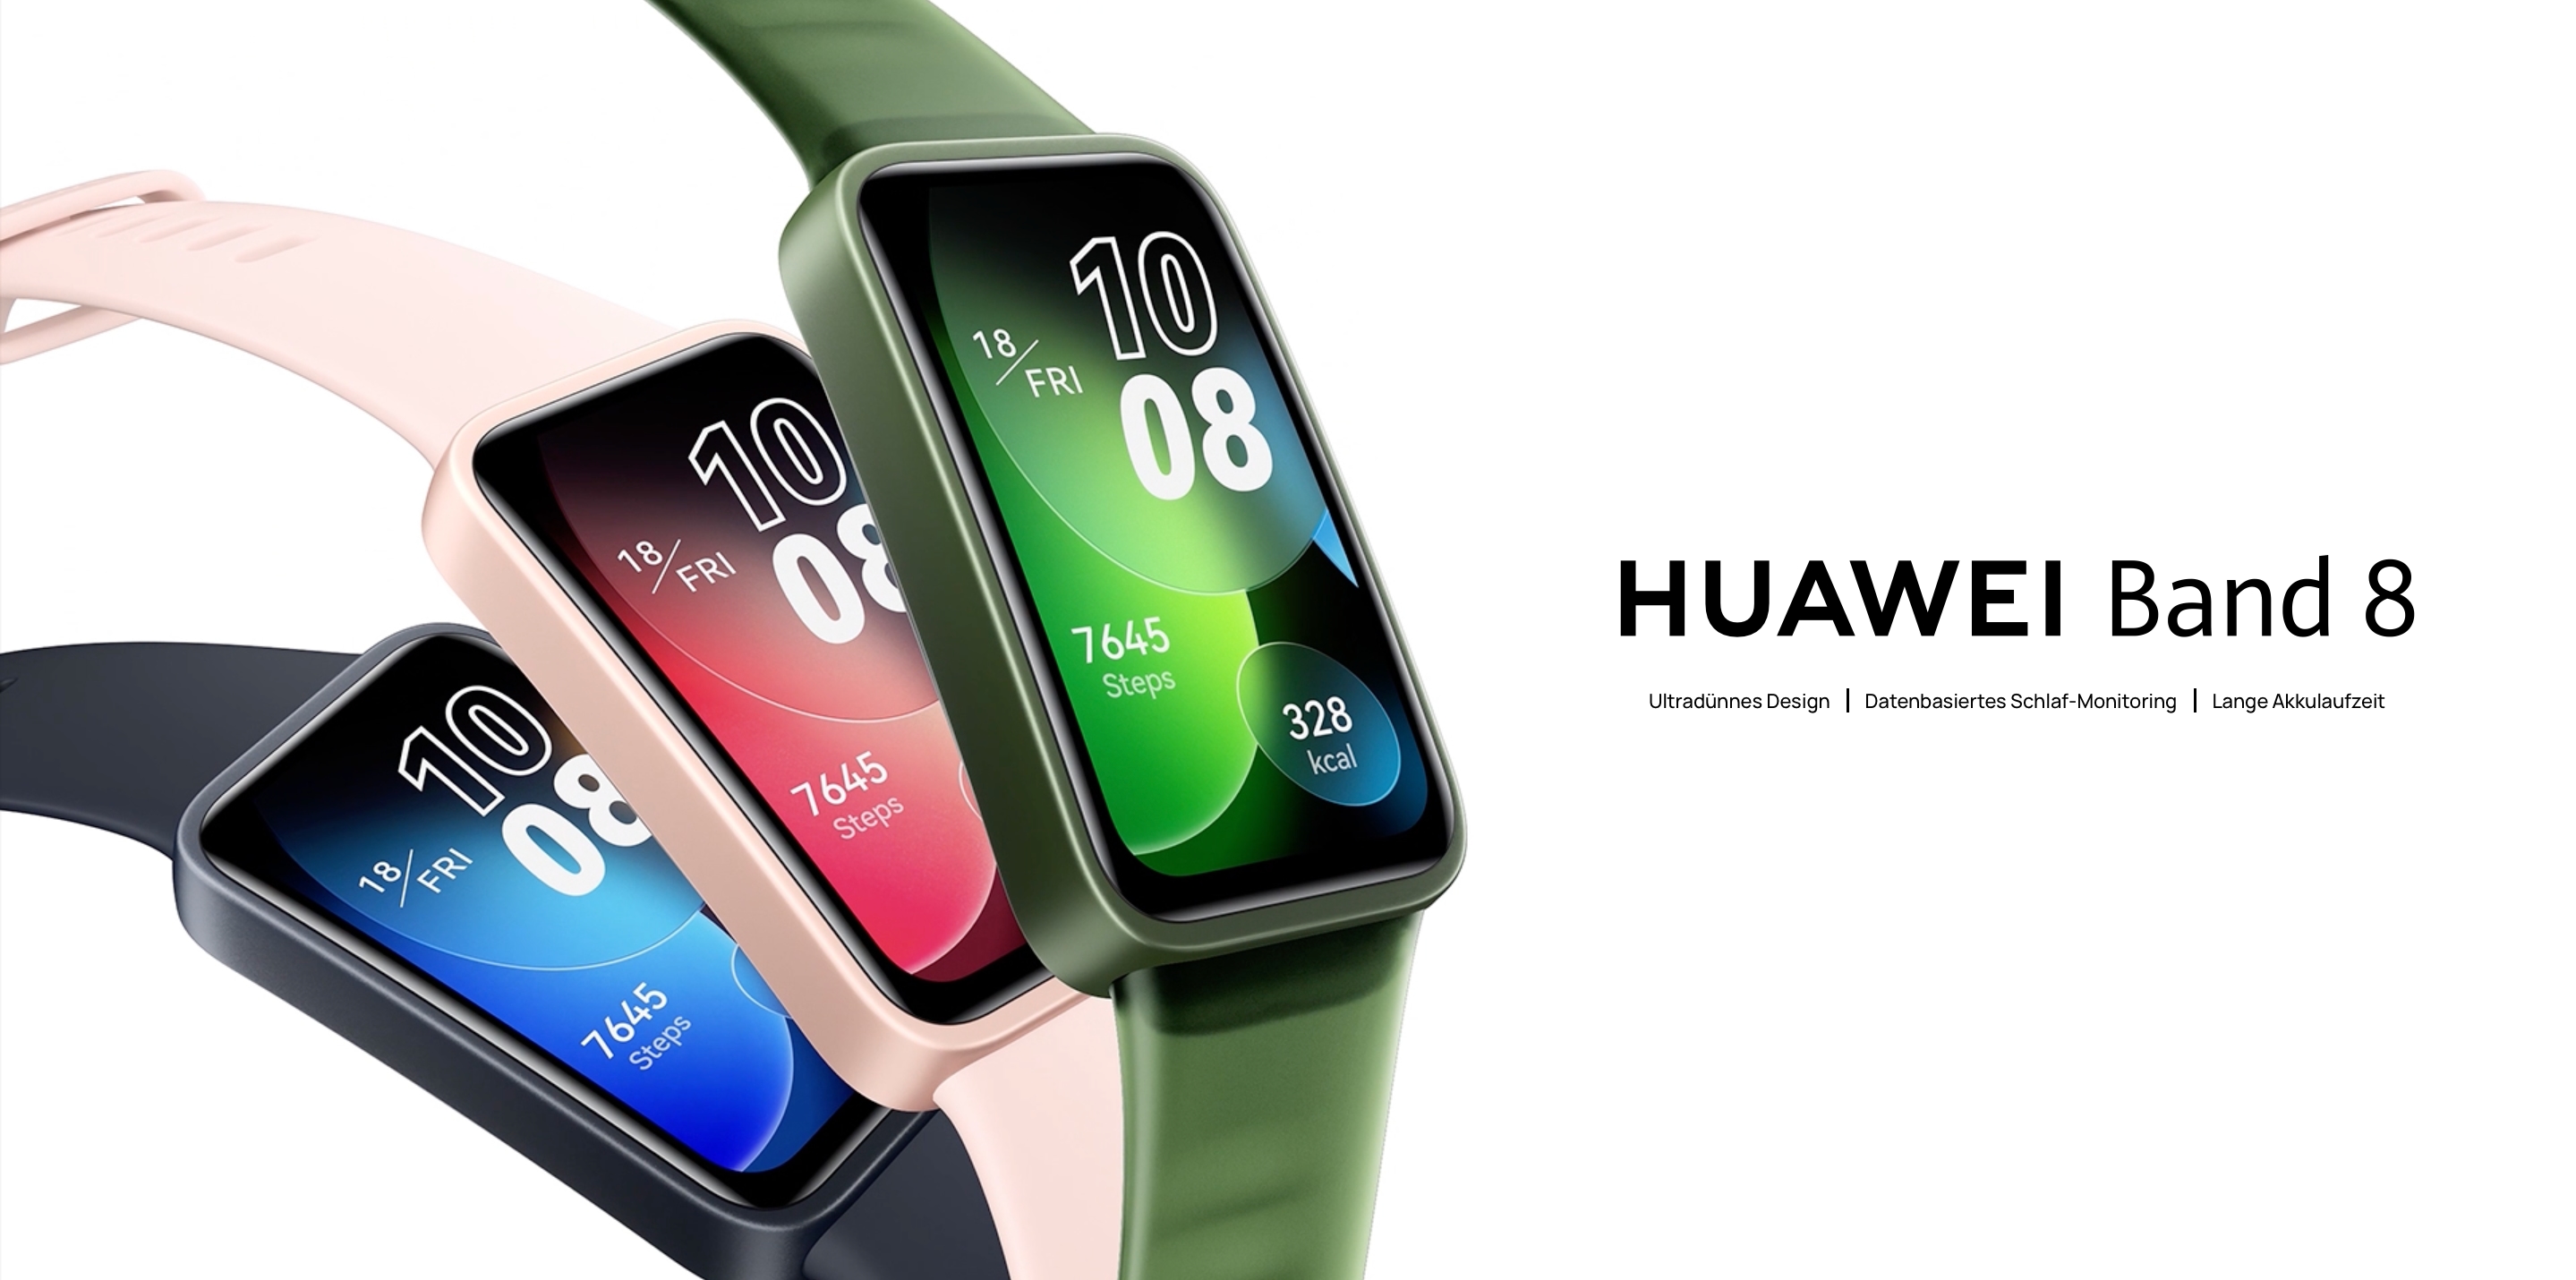 Huawei Band 8 mit AMOLED-Bildschirm, SpO2-Sensor, Akkulaufzeit von bis zu 14 Tagen und einem Preis von 59 Euro in Deutschland debütiert